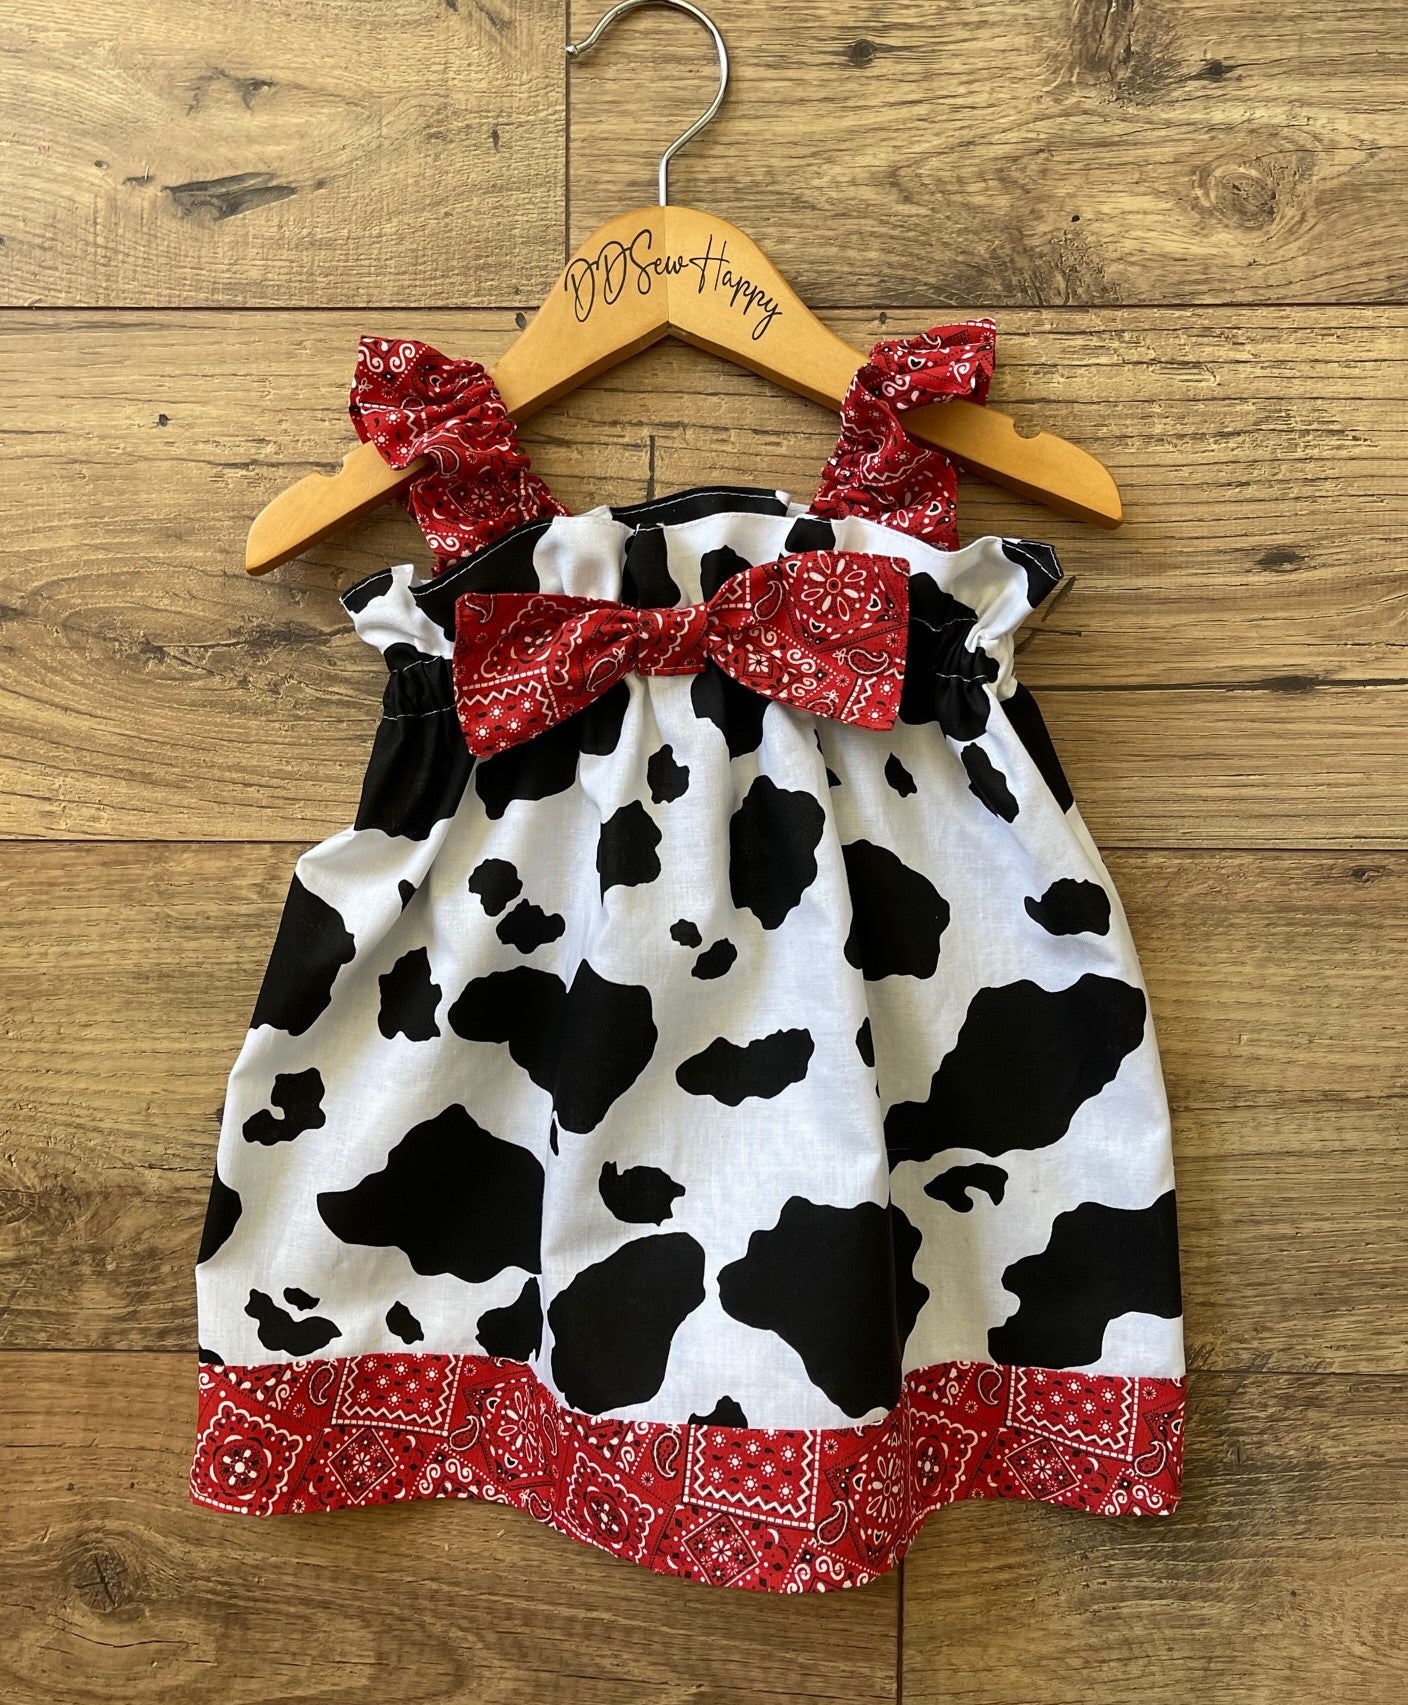 Girls Infant Toddler Ruffle Strap Sundress Style Cowhide & Red Bandana fabrics